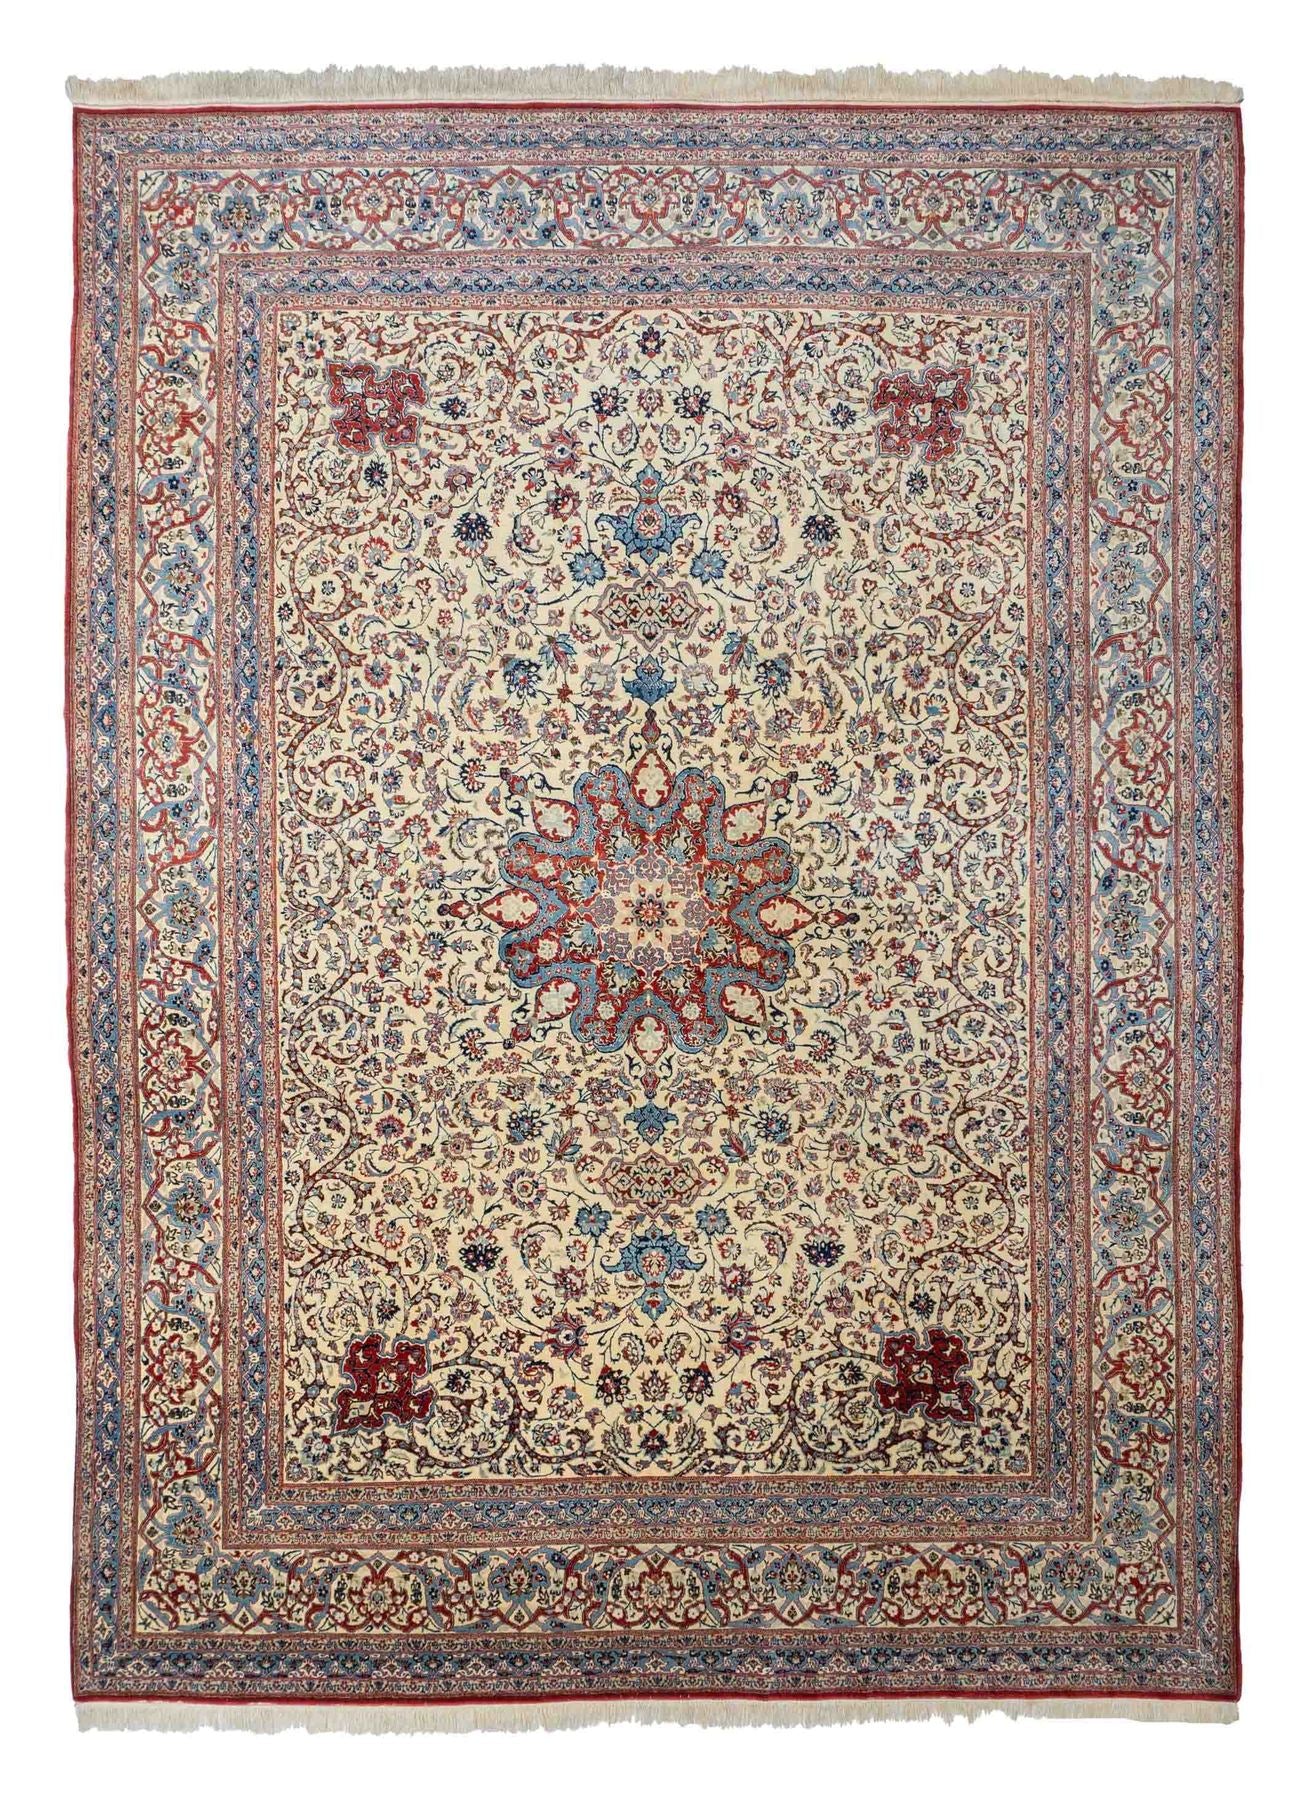 Ein Foto von einem Nain Teppich mit einem zentralen Medaillon.